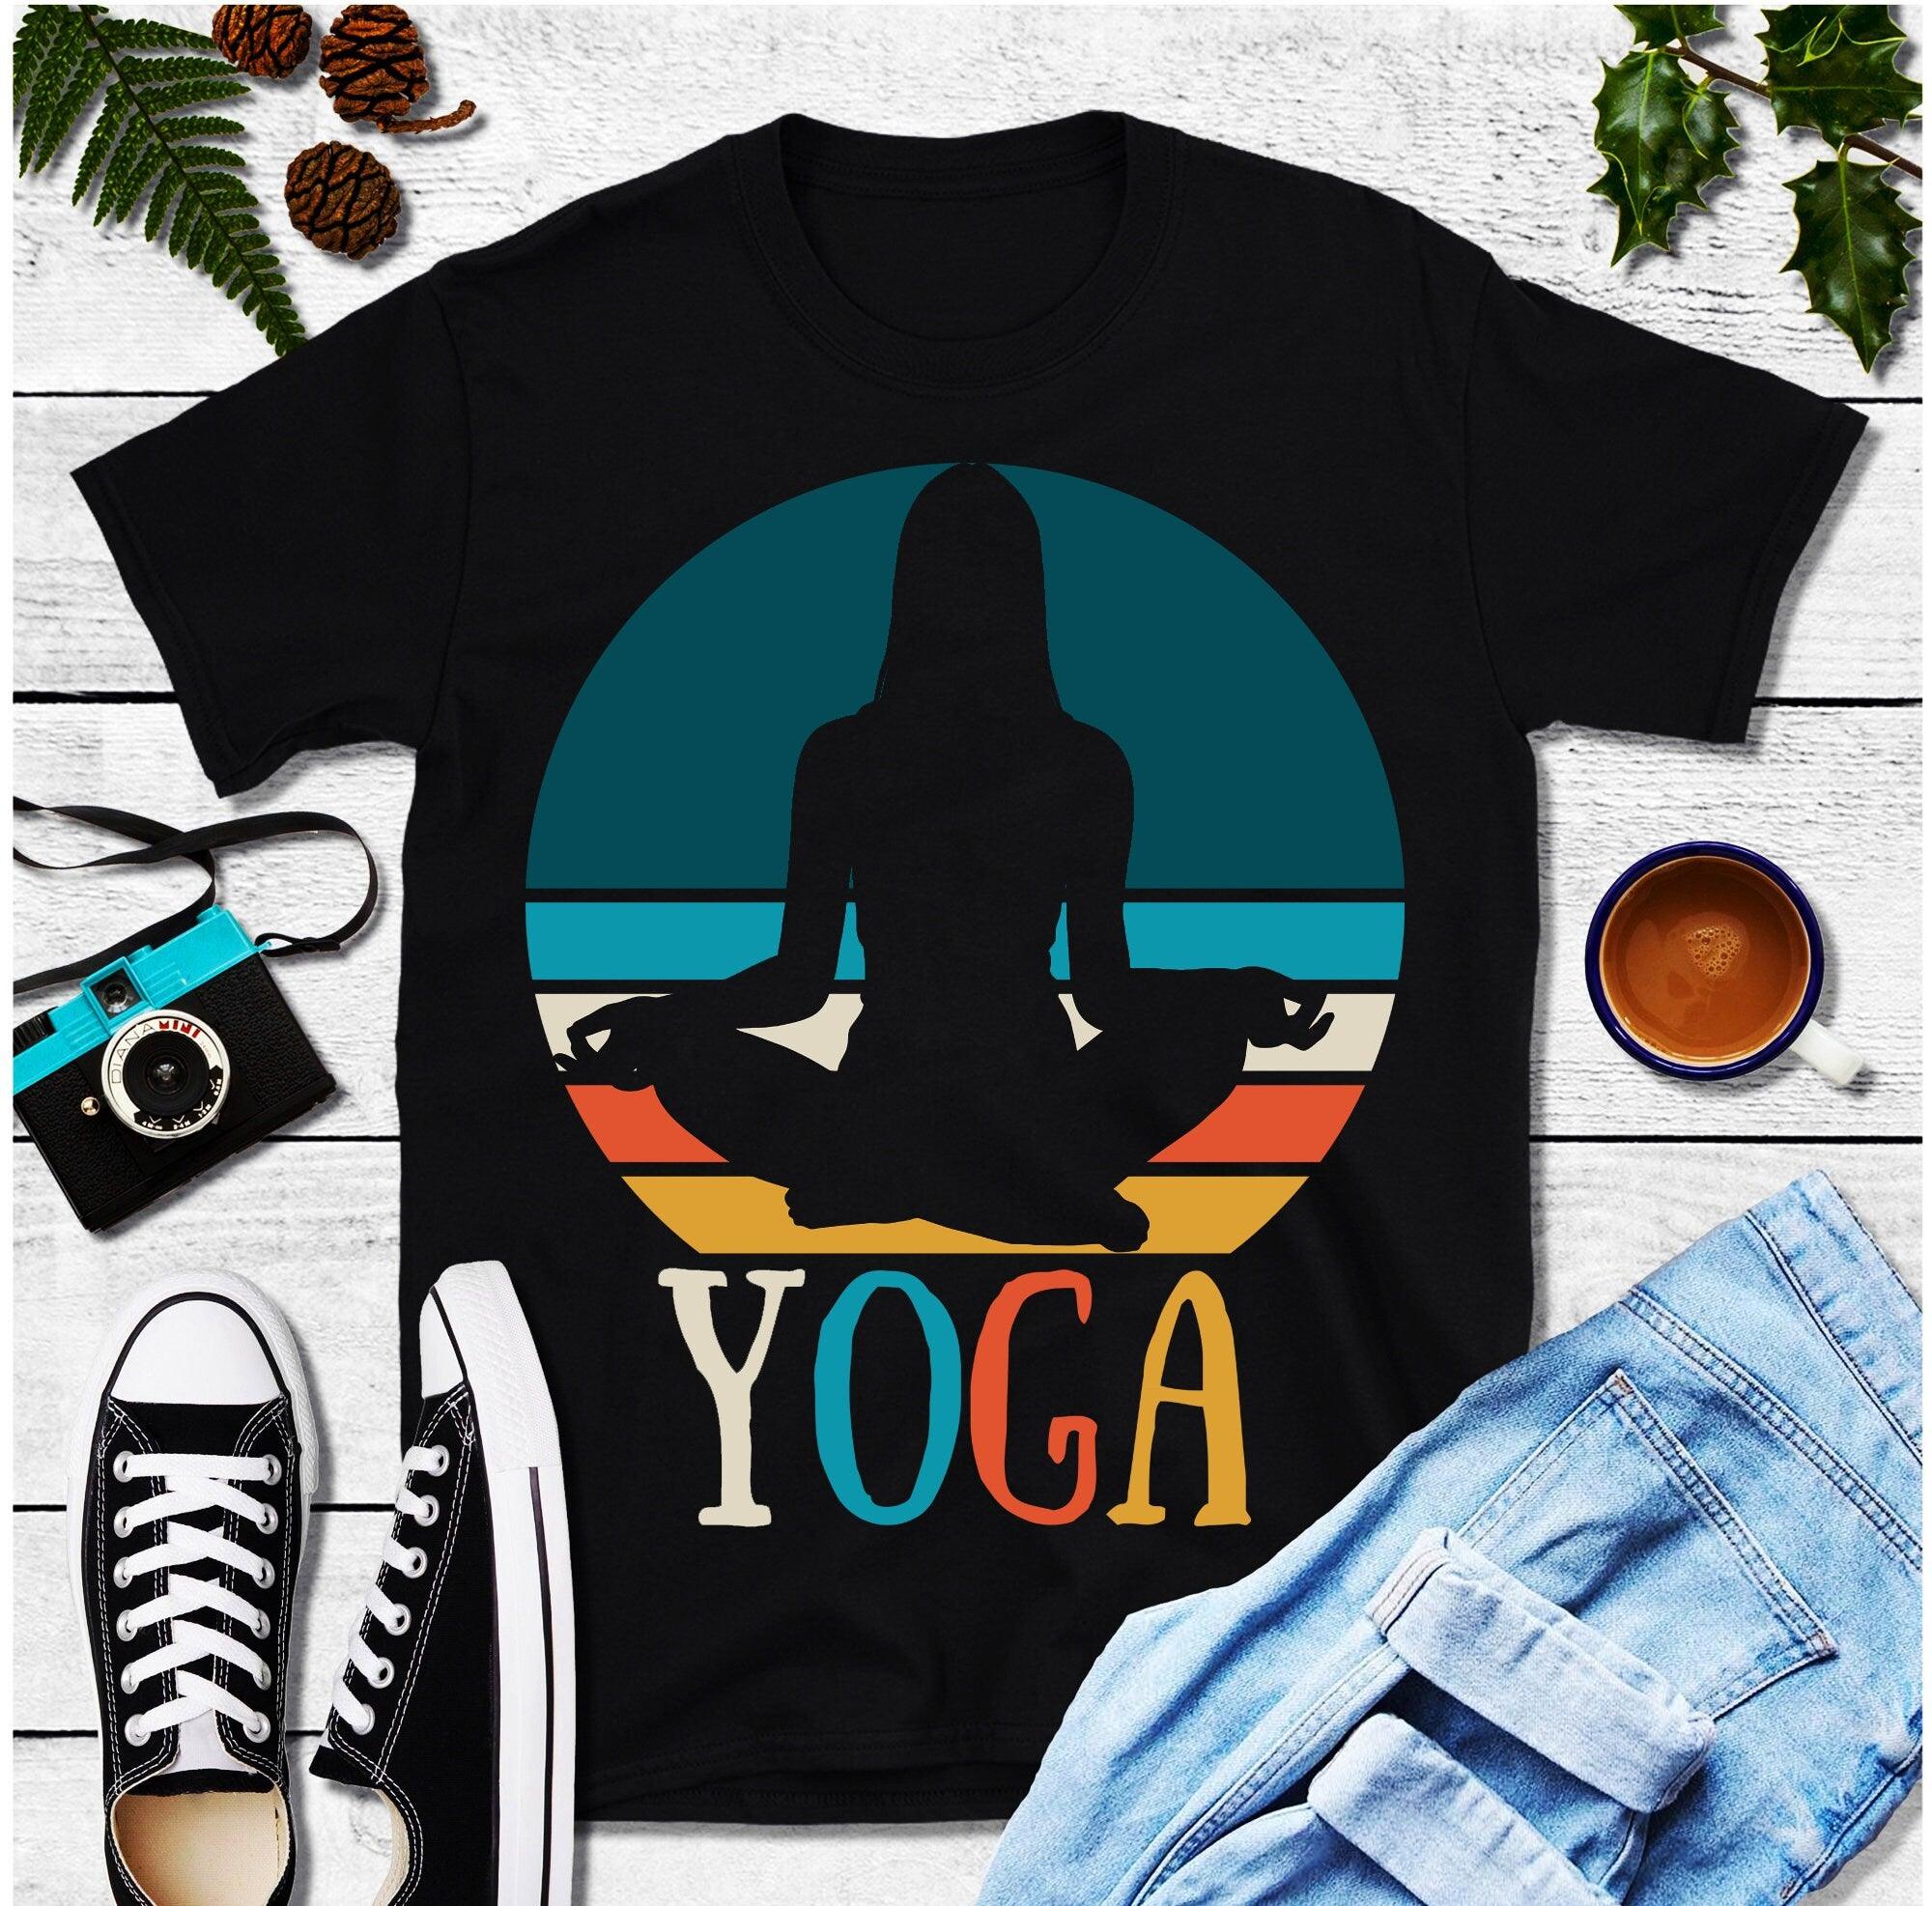 Yoga Kızı | Retro Gün Batımı Tişörtleri, Yoga Hediye Gömleği, Namaste Gömleği, Yogi için Hediye, Yoga Sevgilisi Gömleği, Meditasyon Gömleği, Yoga Tişörtü, Yoga Tişörtü - plusminusco.com